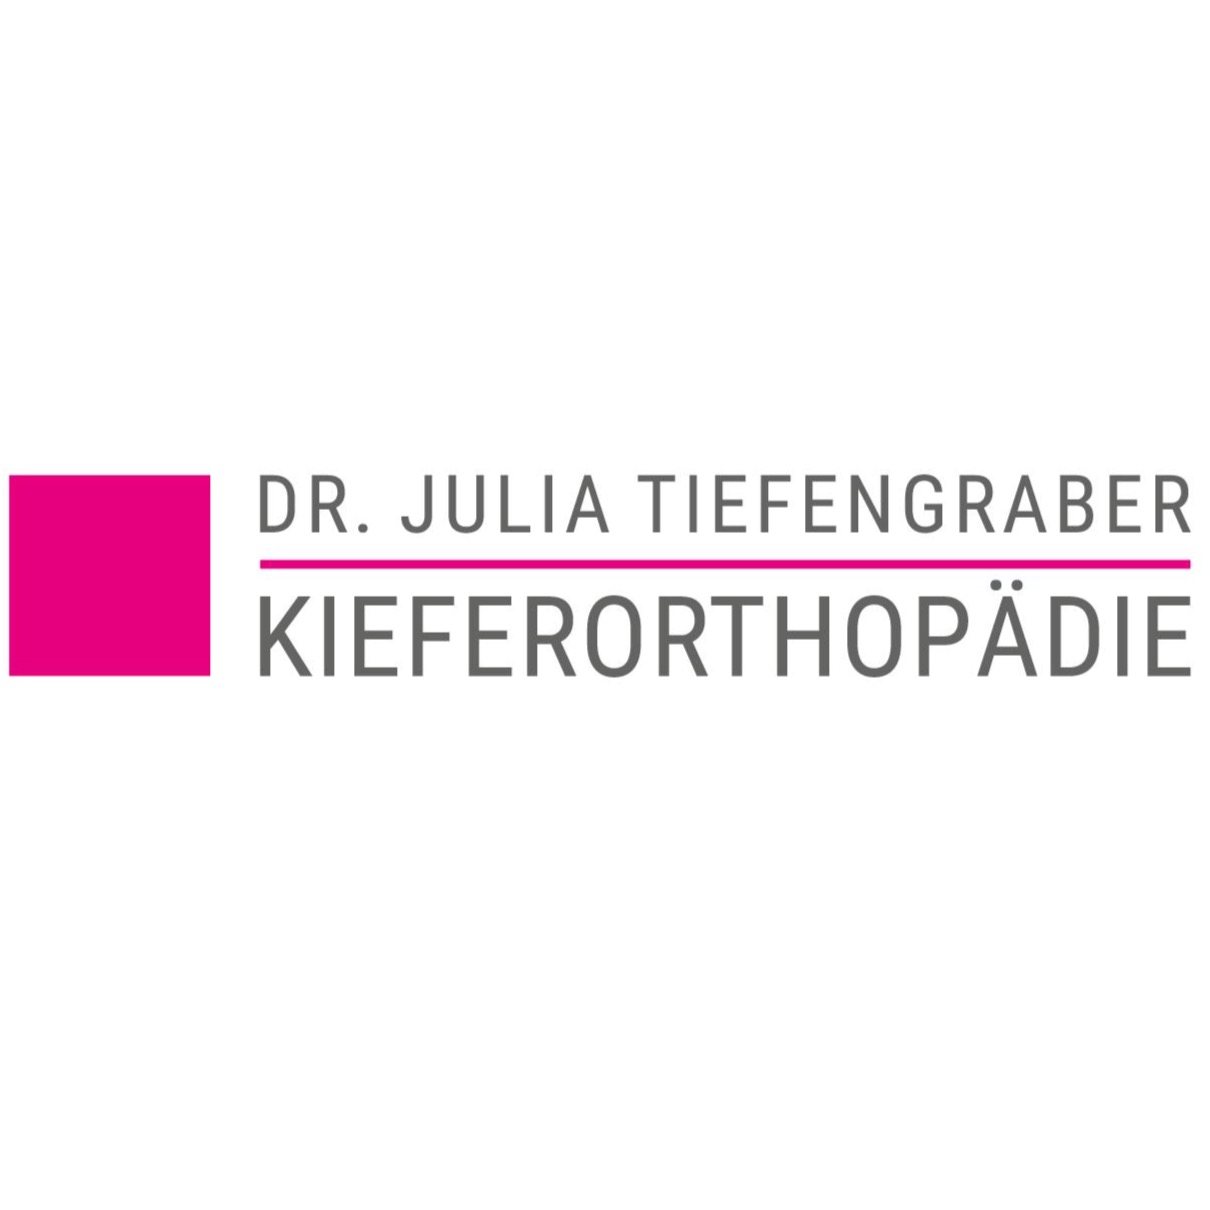 Kieferorthopädische Facharztpraxis Dr.Julia Tiefengraber in Meerbusch - Logo